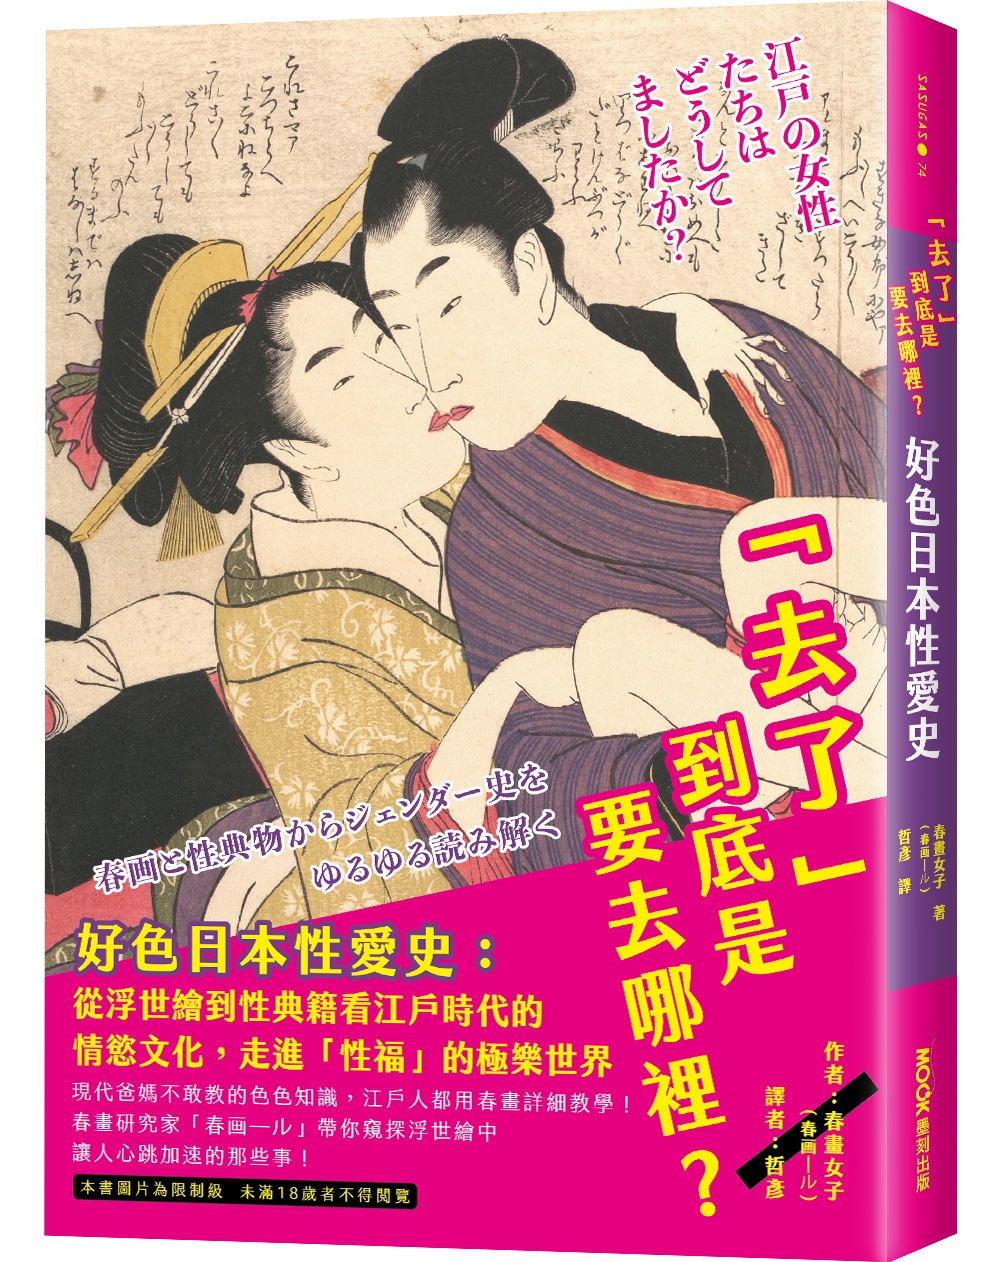 「去了」到底是要去哪裡?好色日本性愛史：從浮世繪到性典籍看江戶時代的情慾文化，走進「性福」的極樂世界